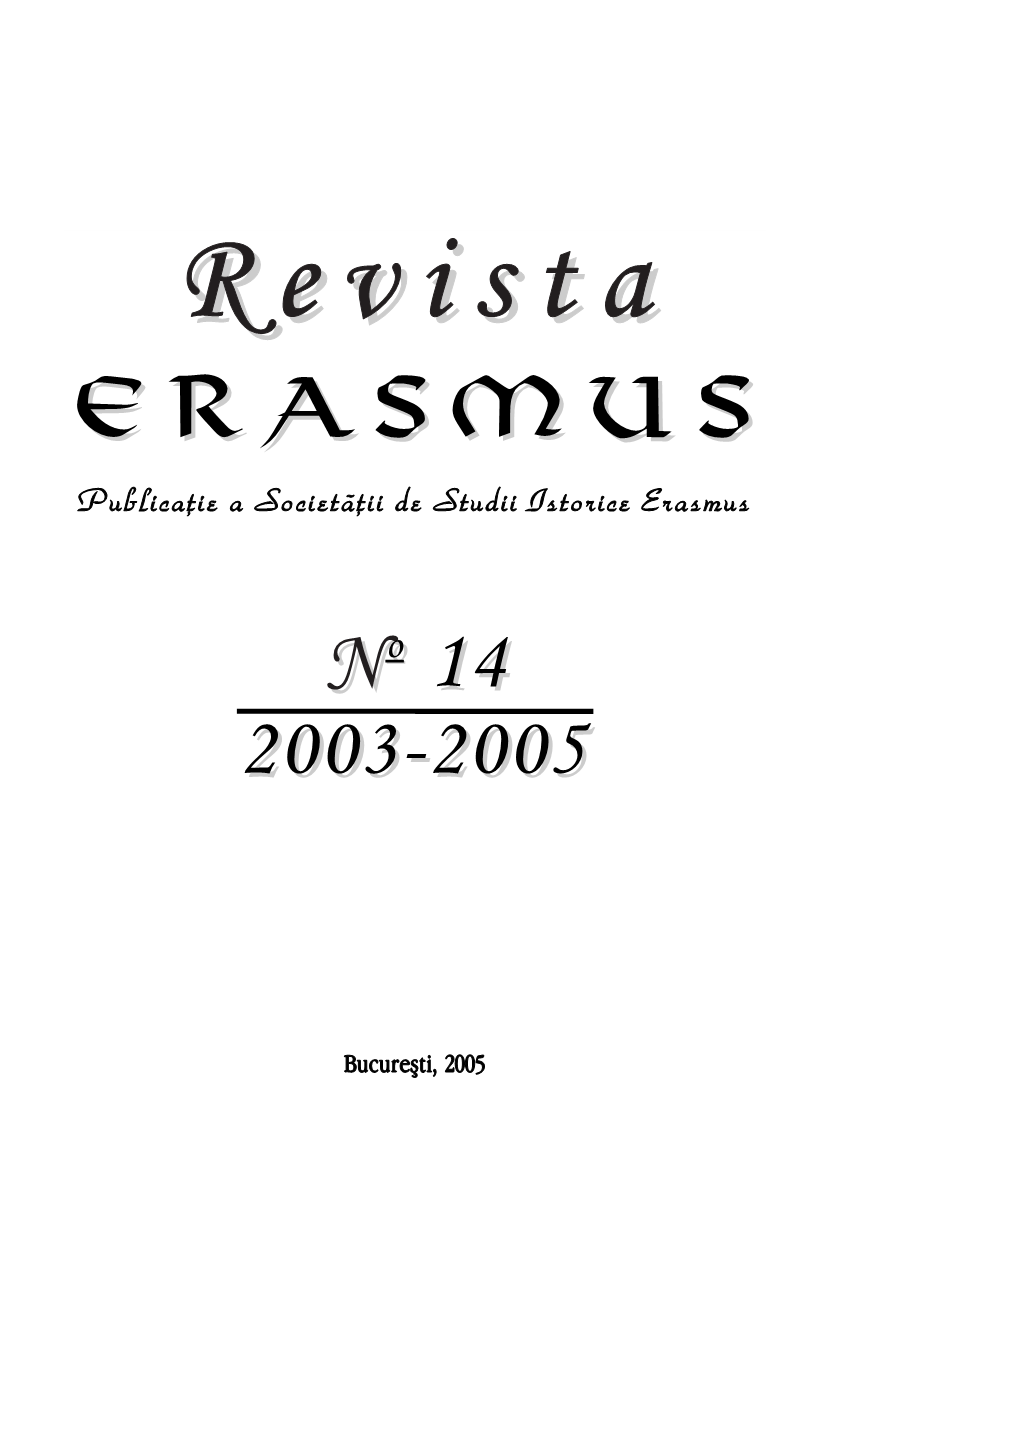 2003-2005 Erasmus